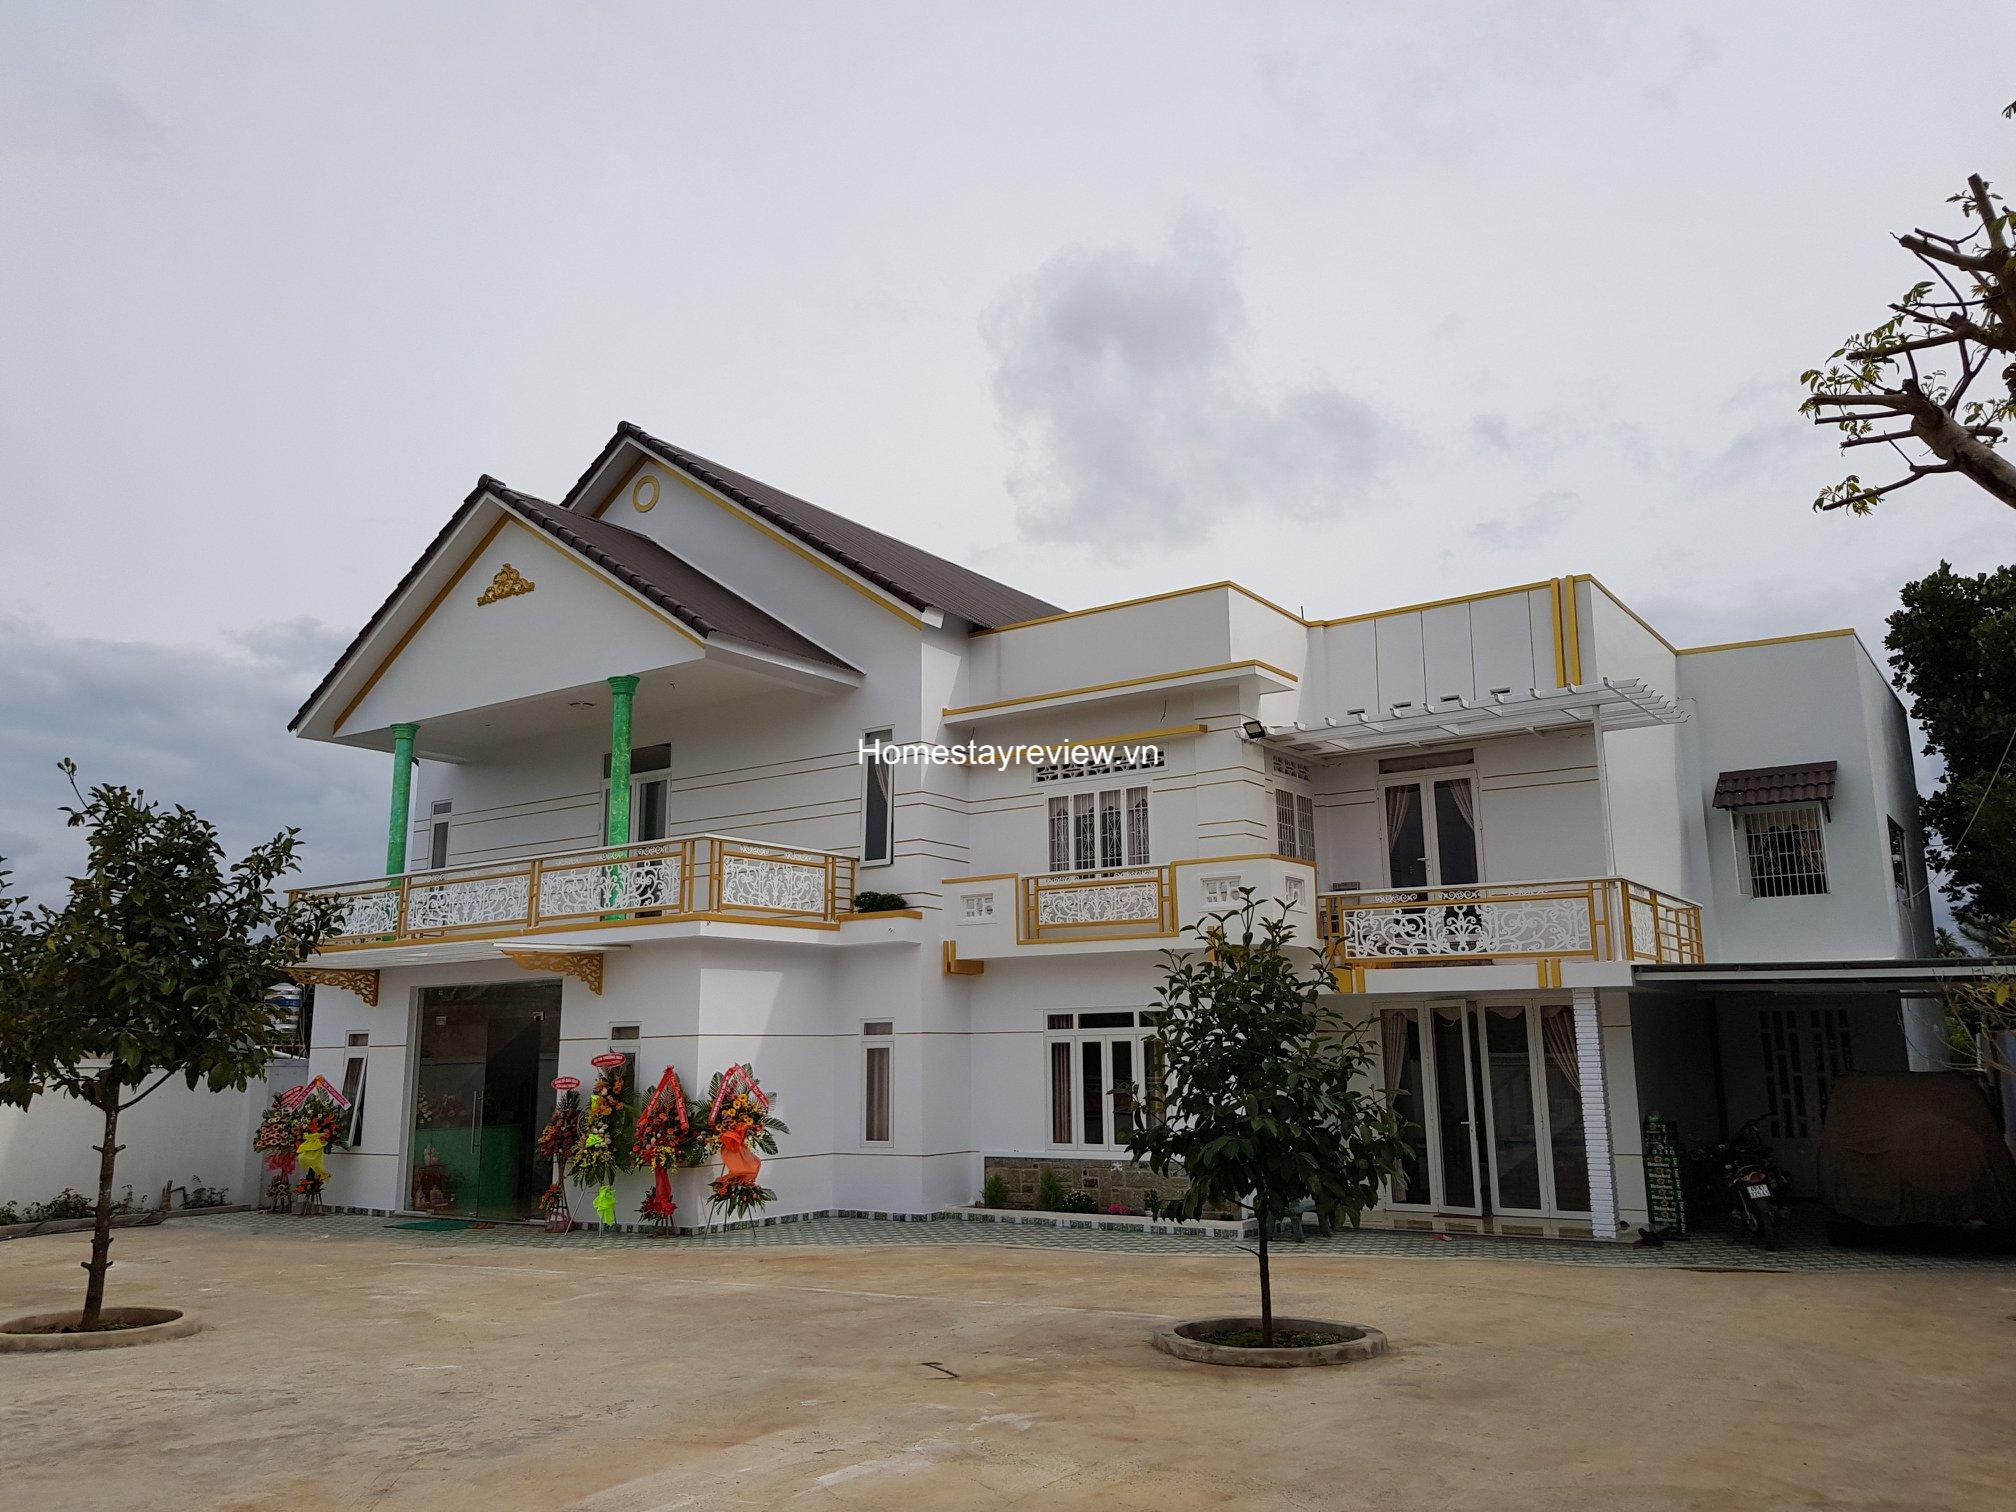 Top 20 Khách sạn resort villa homestay Bảo Lộc giá rẻ view đẹp nhất